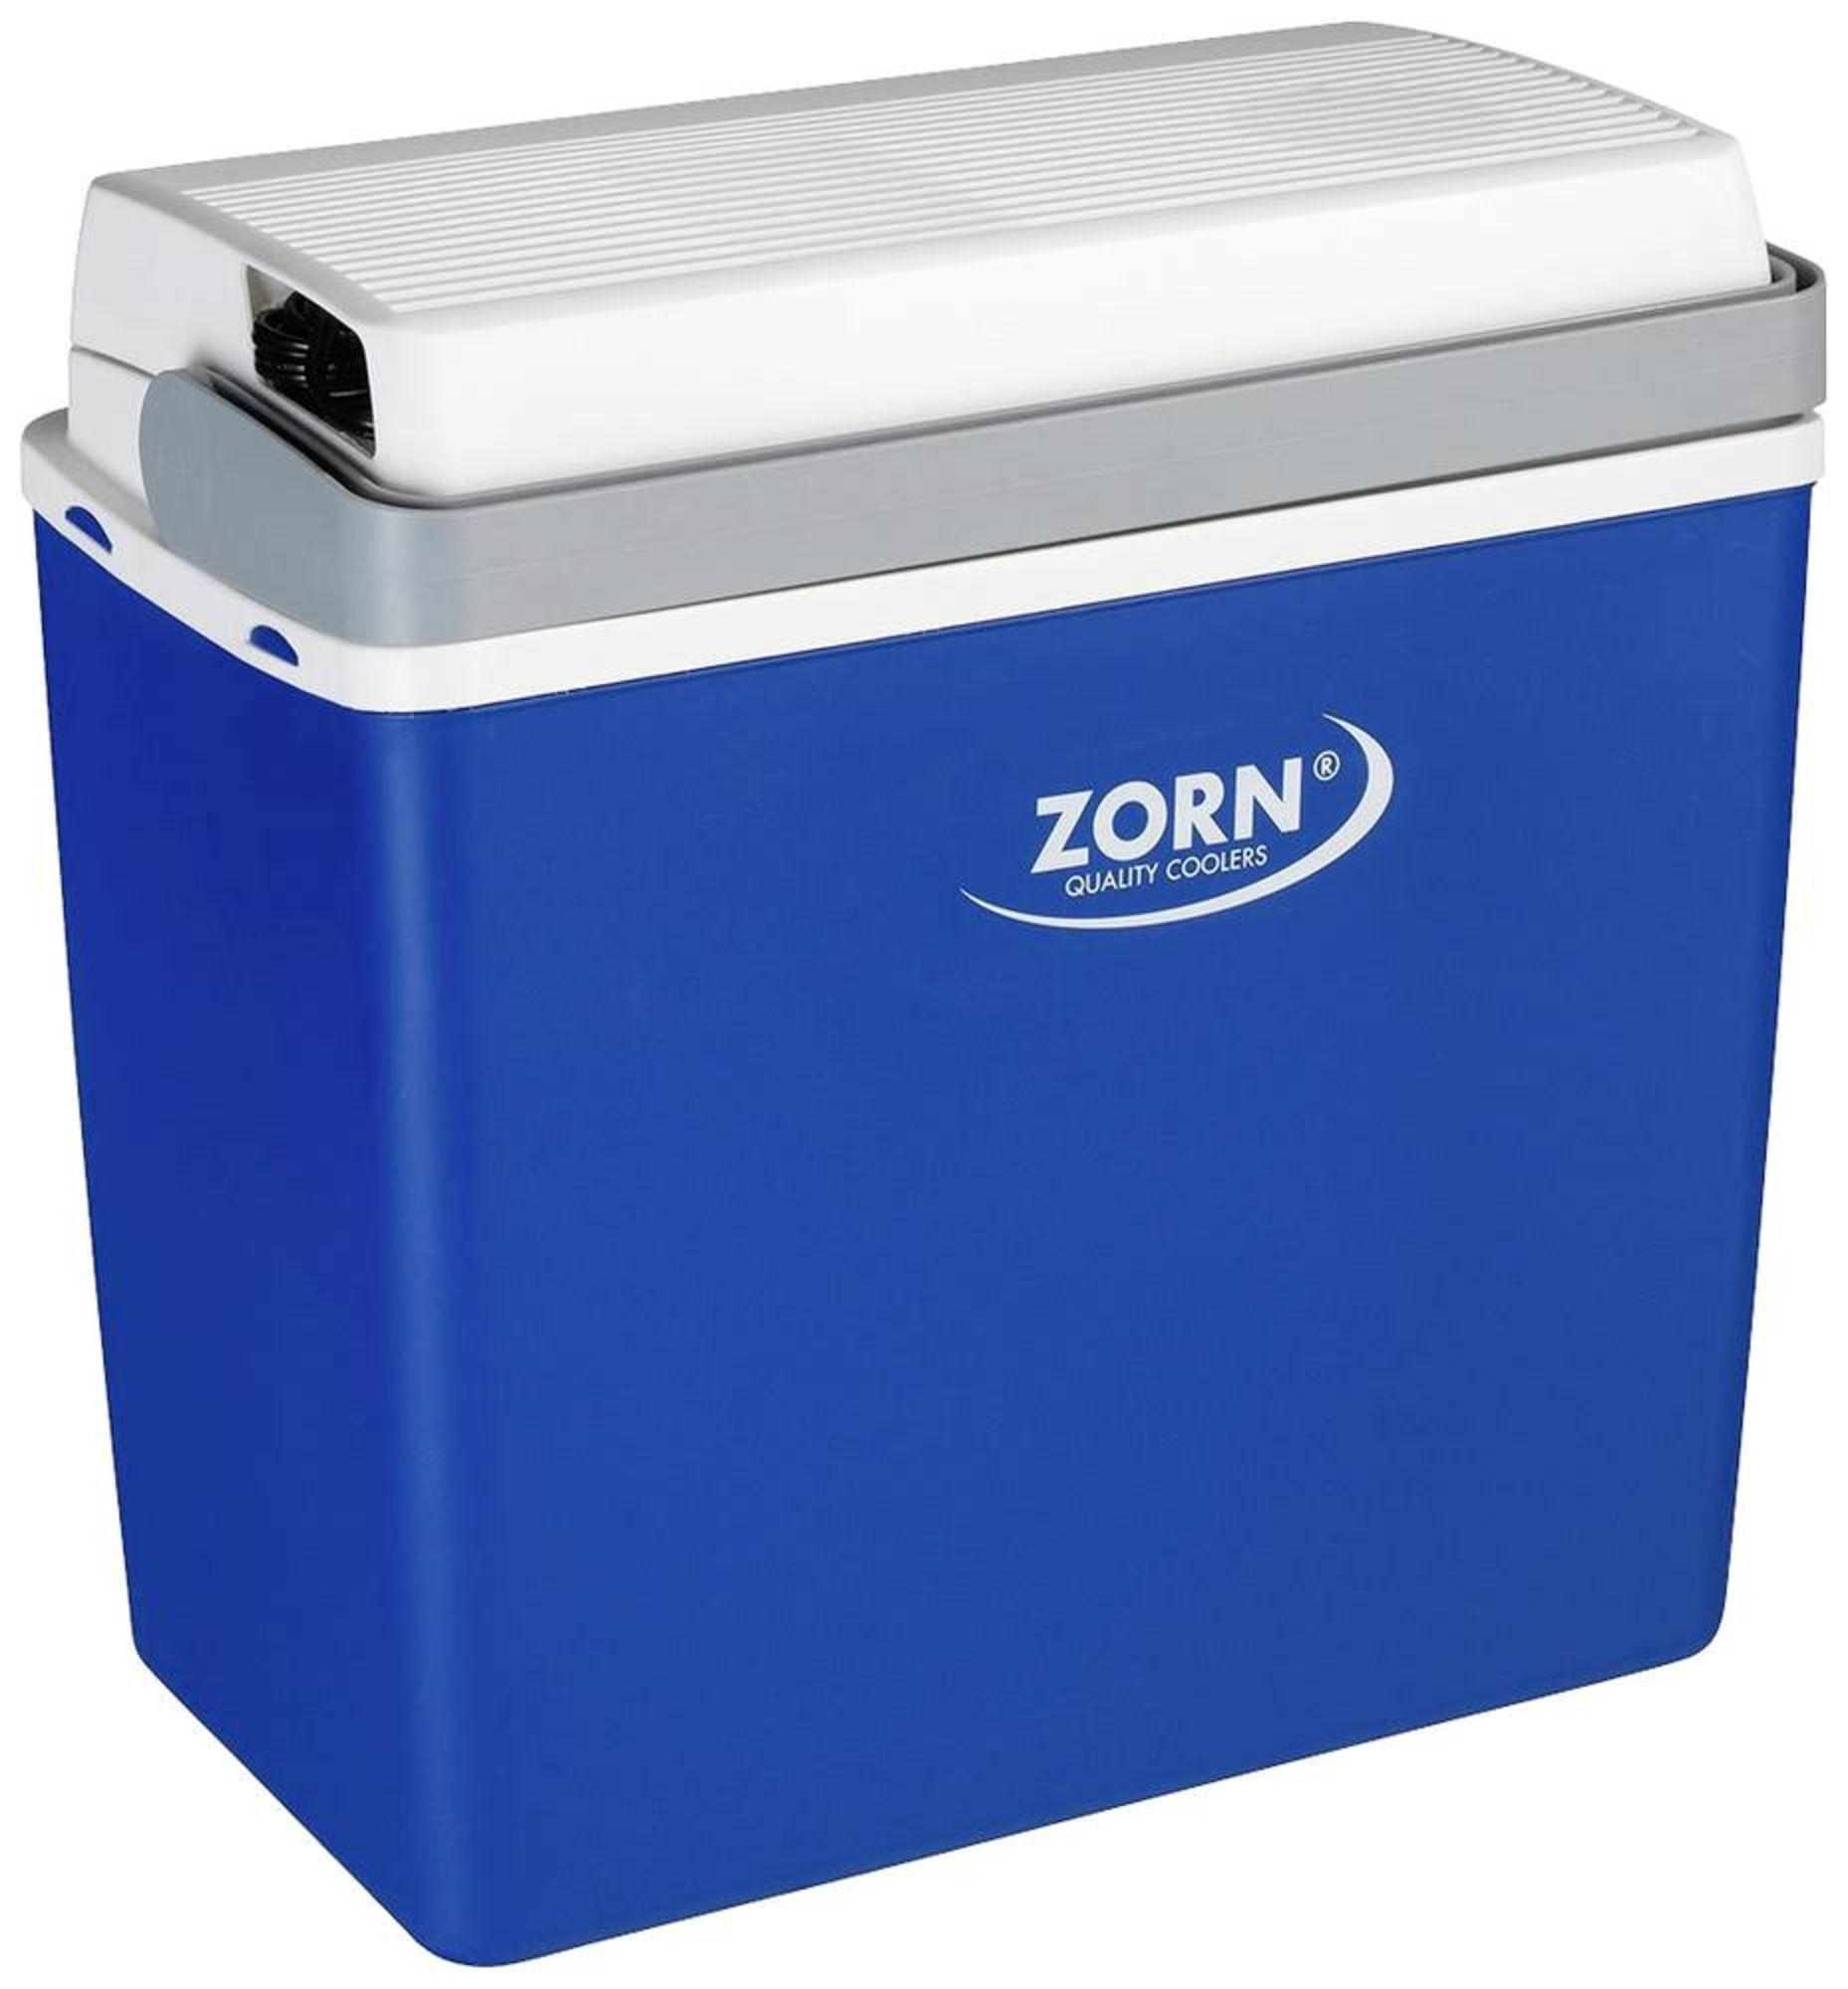 ZORN Z24 12V Kühlbox Thermoelektrisch 12 V Blau-Weiß 20 l Kühlt bis zu 15°C  unter Umgebungstemperatur, gemessen bei 23°C Umgebungstemperatur online  bestellen